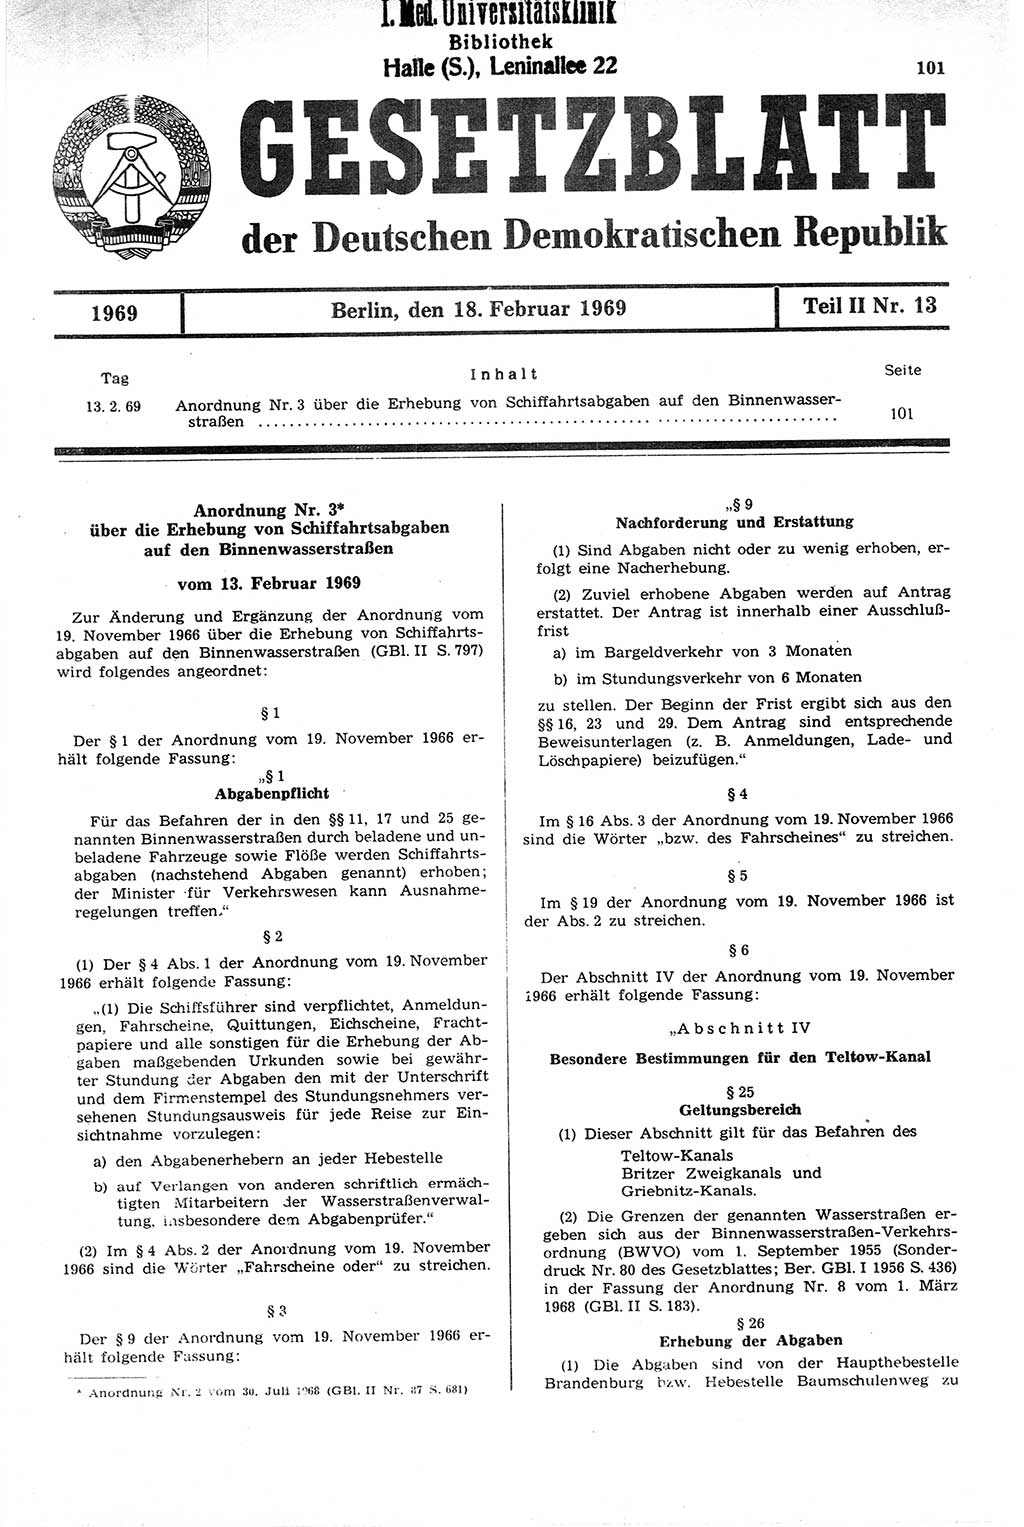 Gesetzblatt (GBl.) der Deutschen Demokratischen Republik (DDR) Teil ⅠⅠ 1969, Seite 101 (GBl. DDR ⅠⅠ 1969, S. 101)